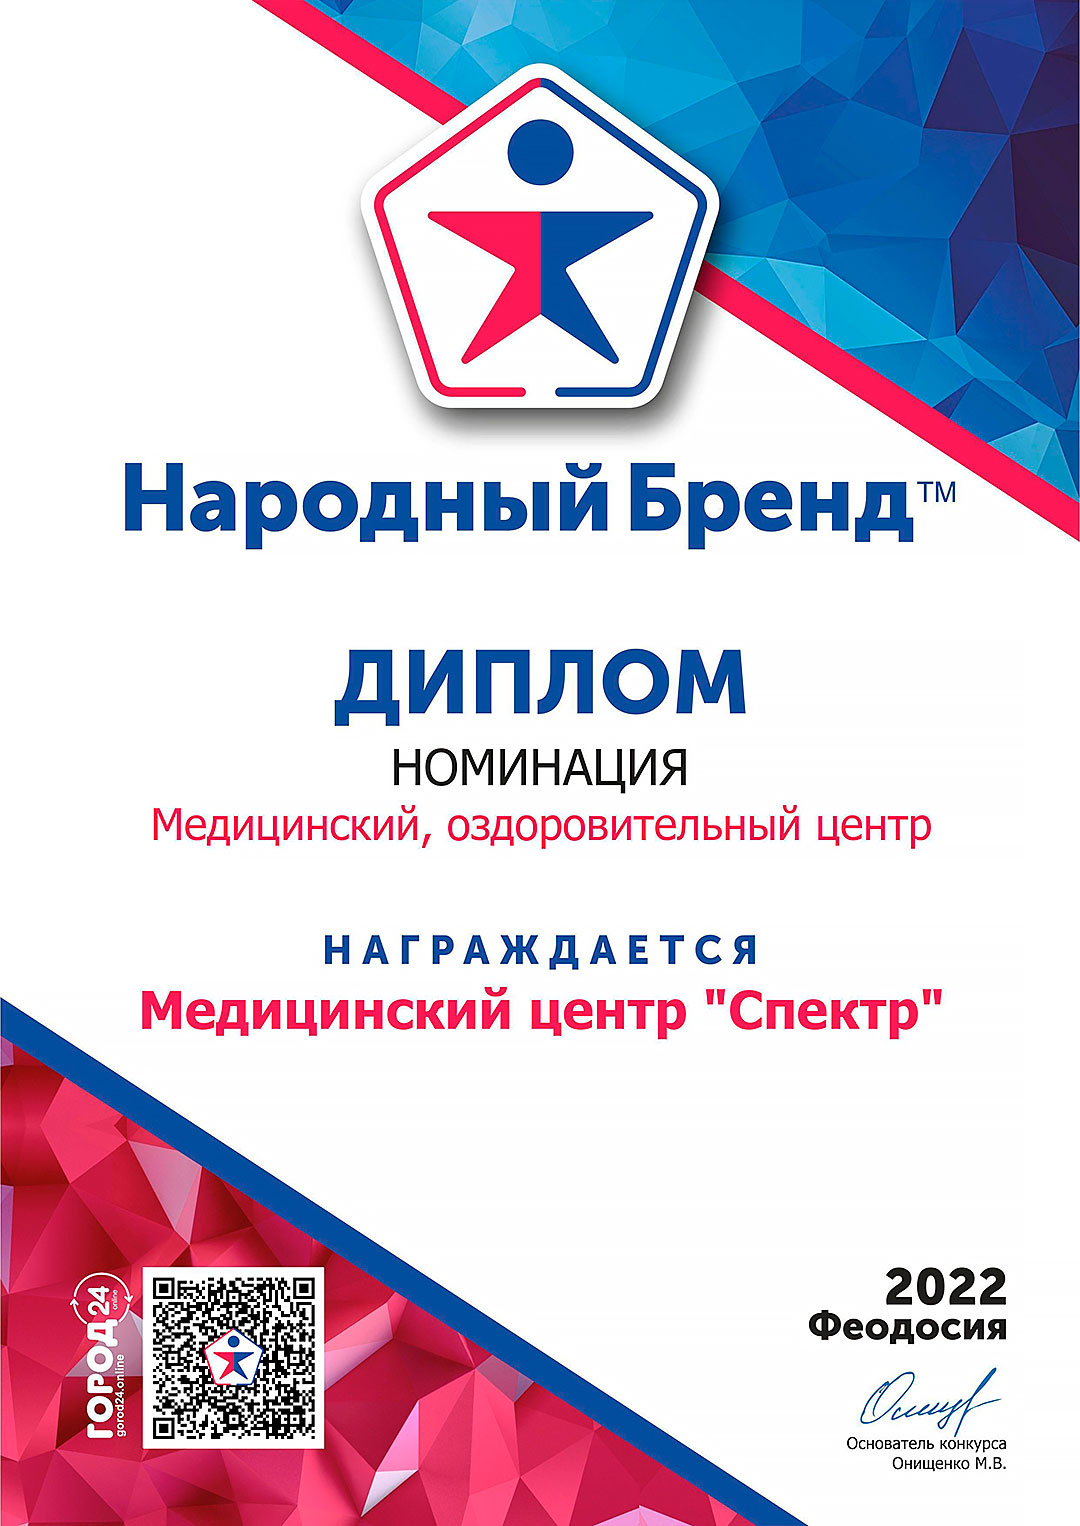 Диплом конкурса 'Народный бренд' за 2022 год.